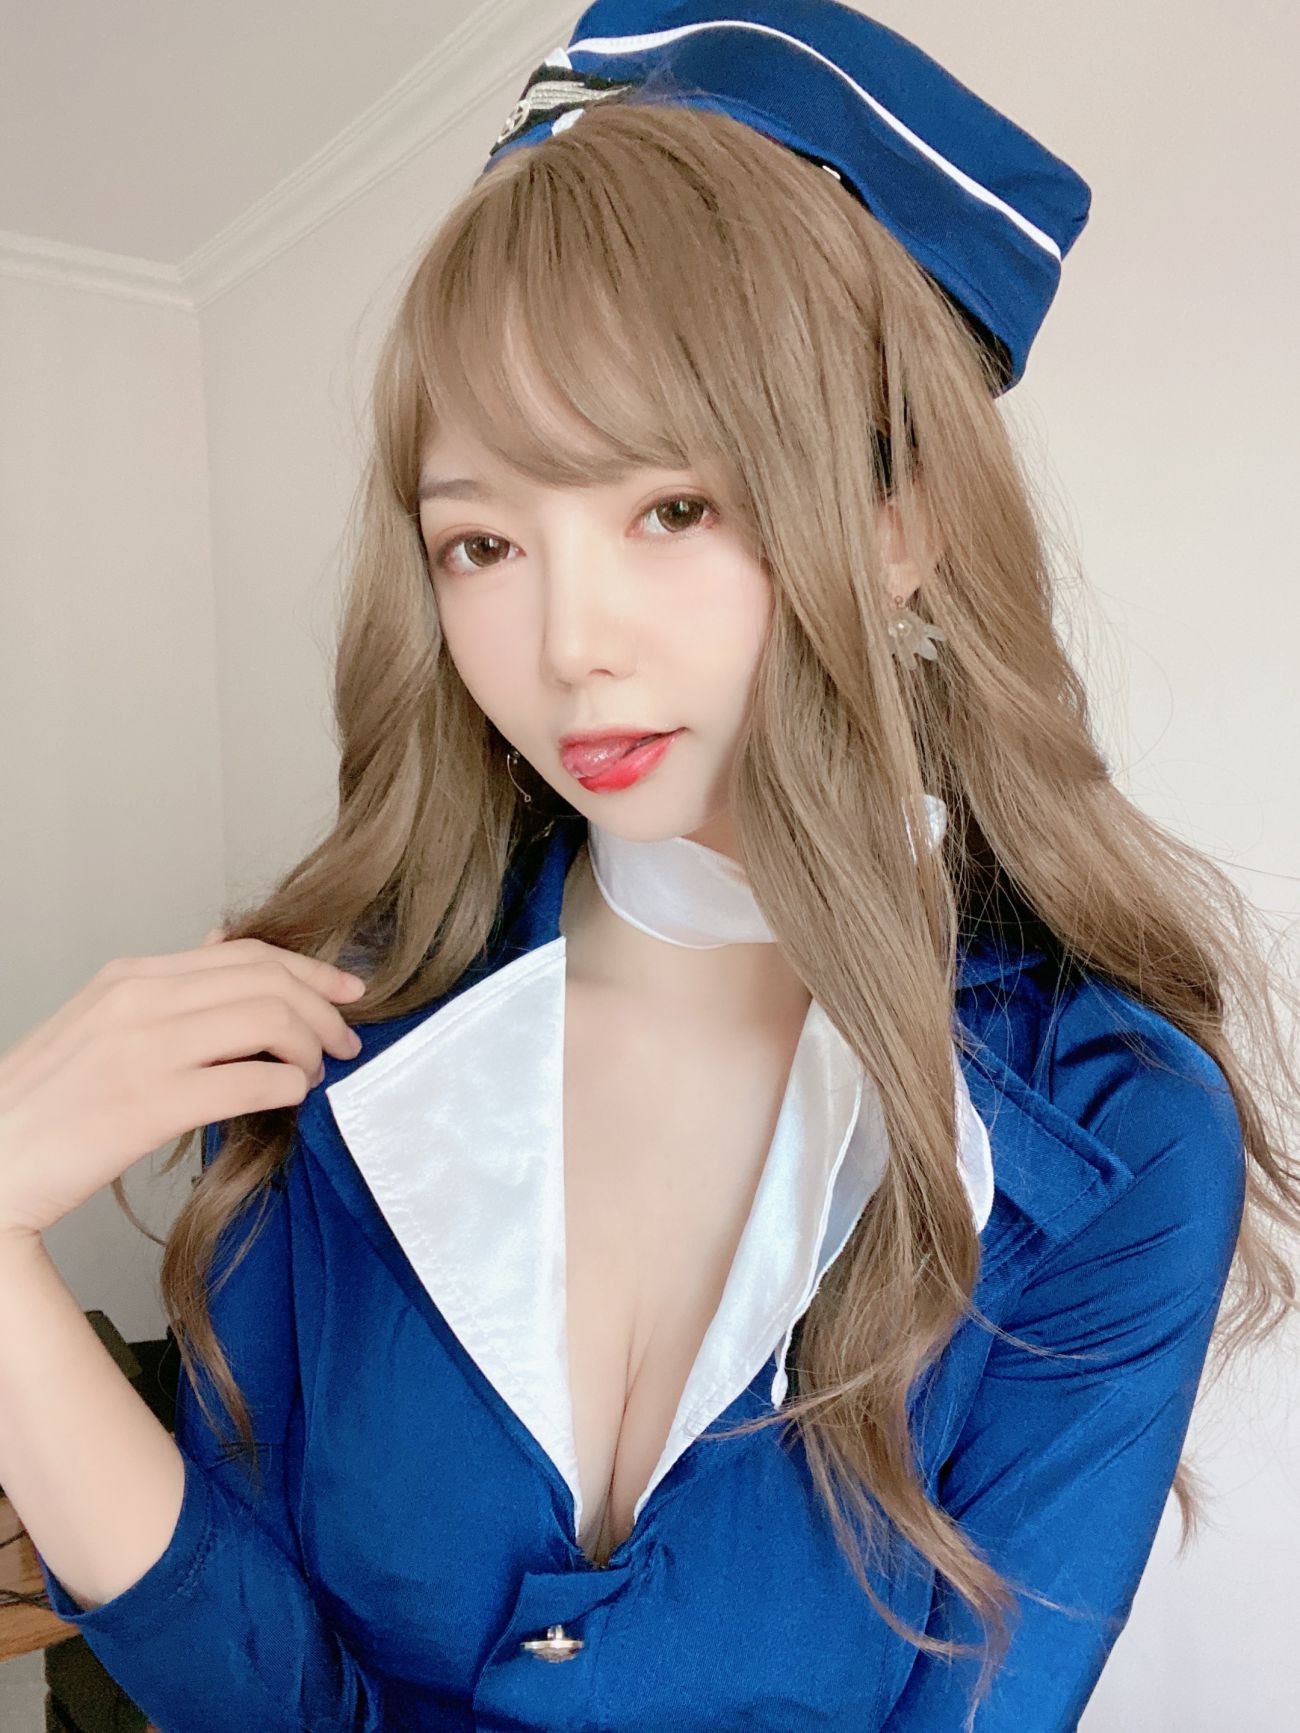 微博美少女51酱性感写真蓝色制服装 (27)